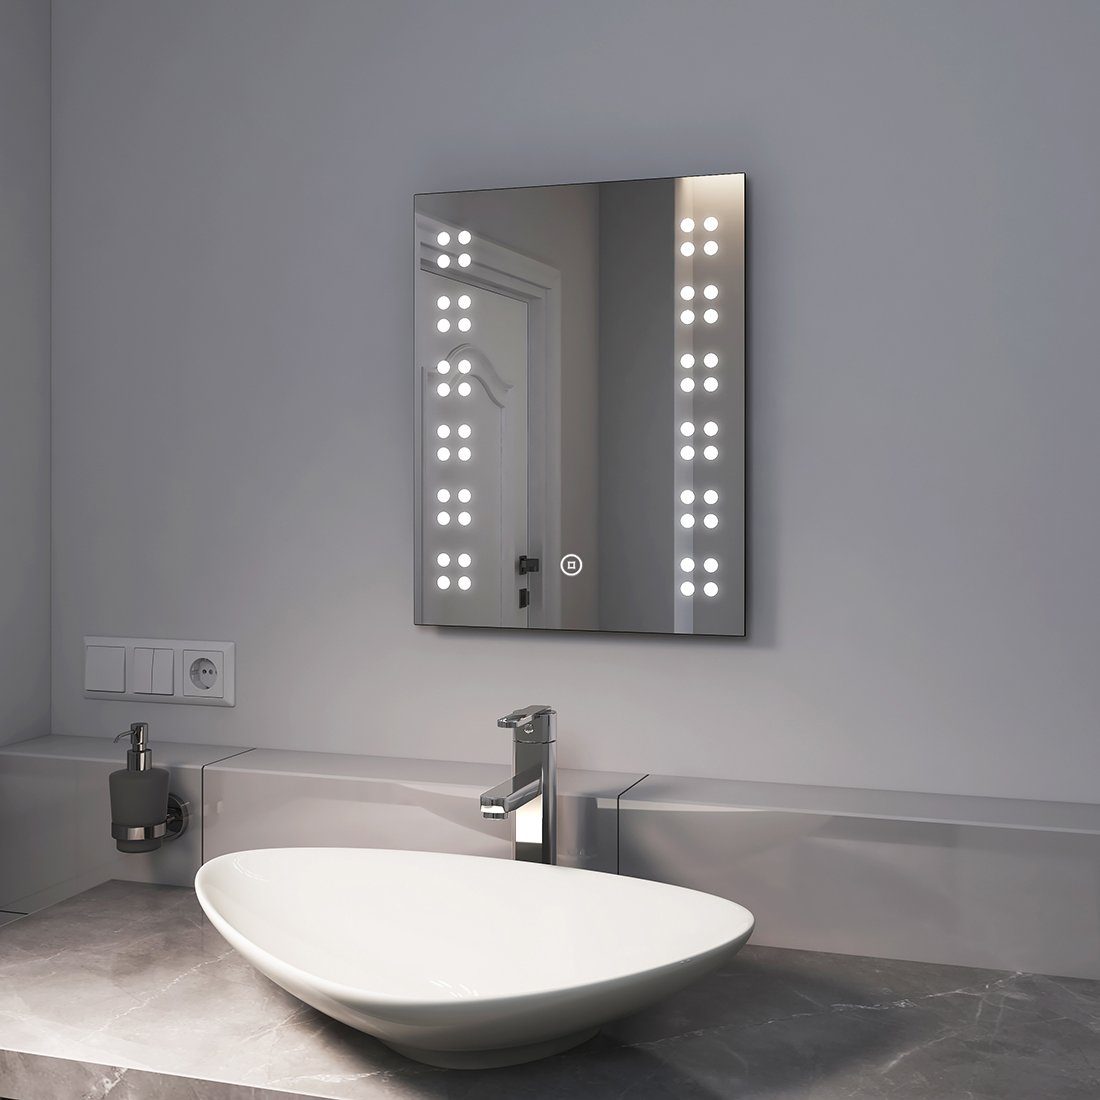 EMKE Badspiegel Kleiner LED Badspiegel mit Beleuchtung Badezimmerspiegel, mit Touchschalter, 6500K Kaltweiß Licht